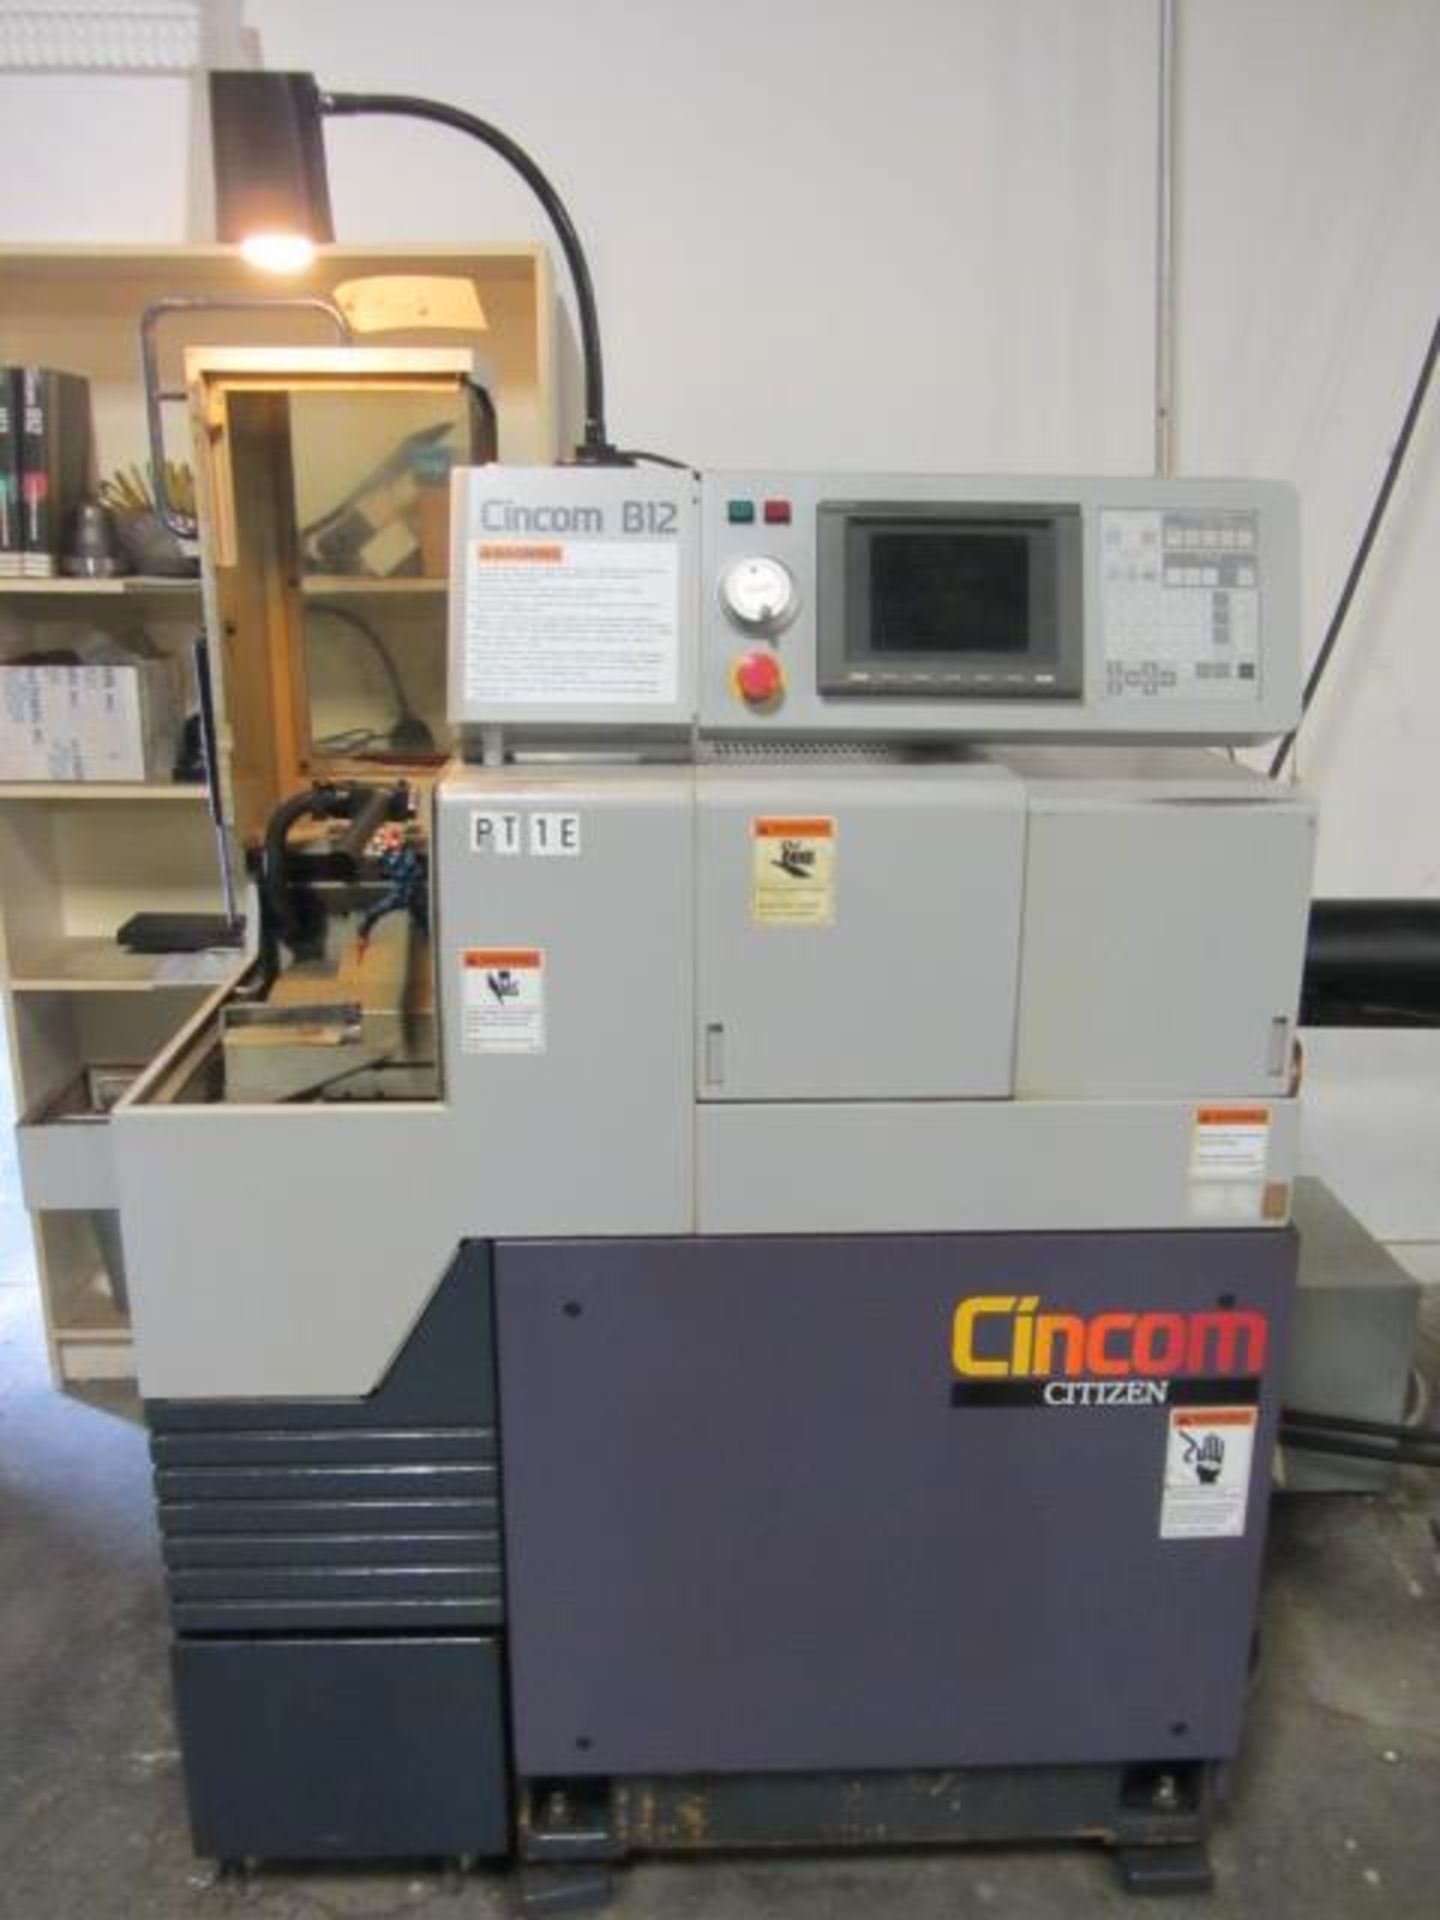 Citizen B12 CNC Swiss Screw Machine with LNS Barfeed, CNC Control, sn:Z2557 - Image 4 of 8